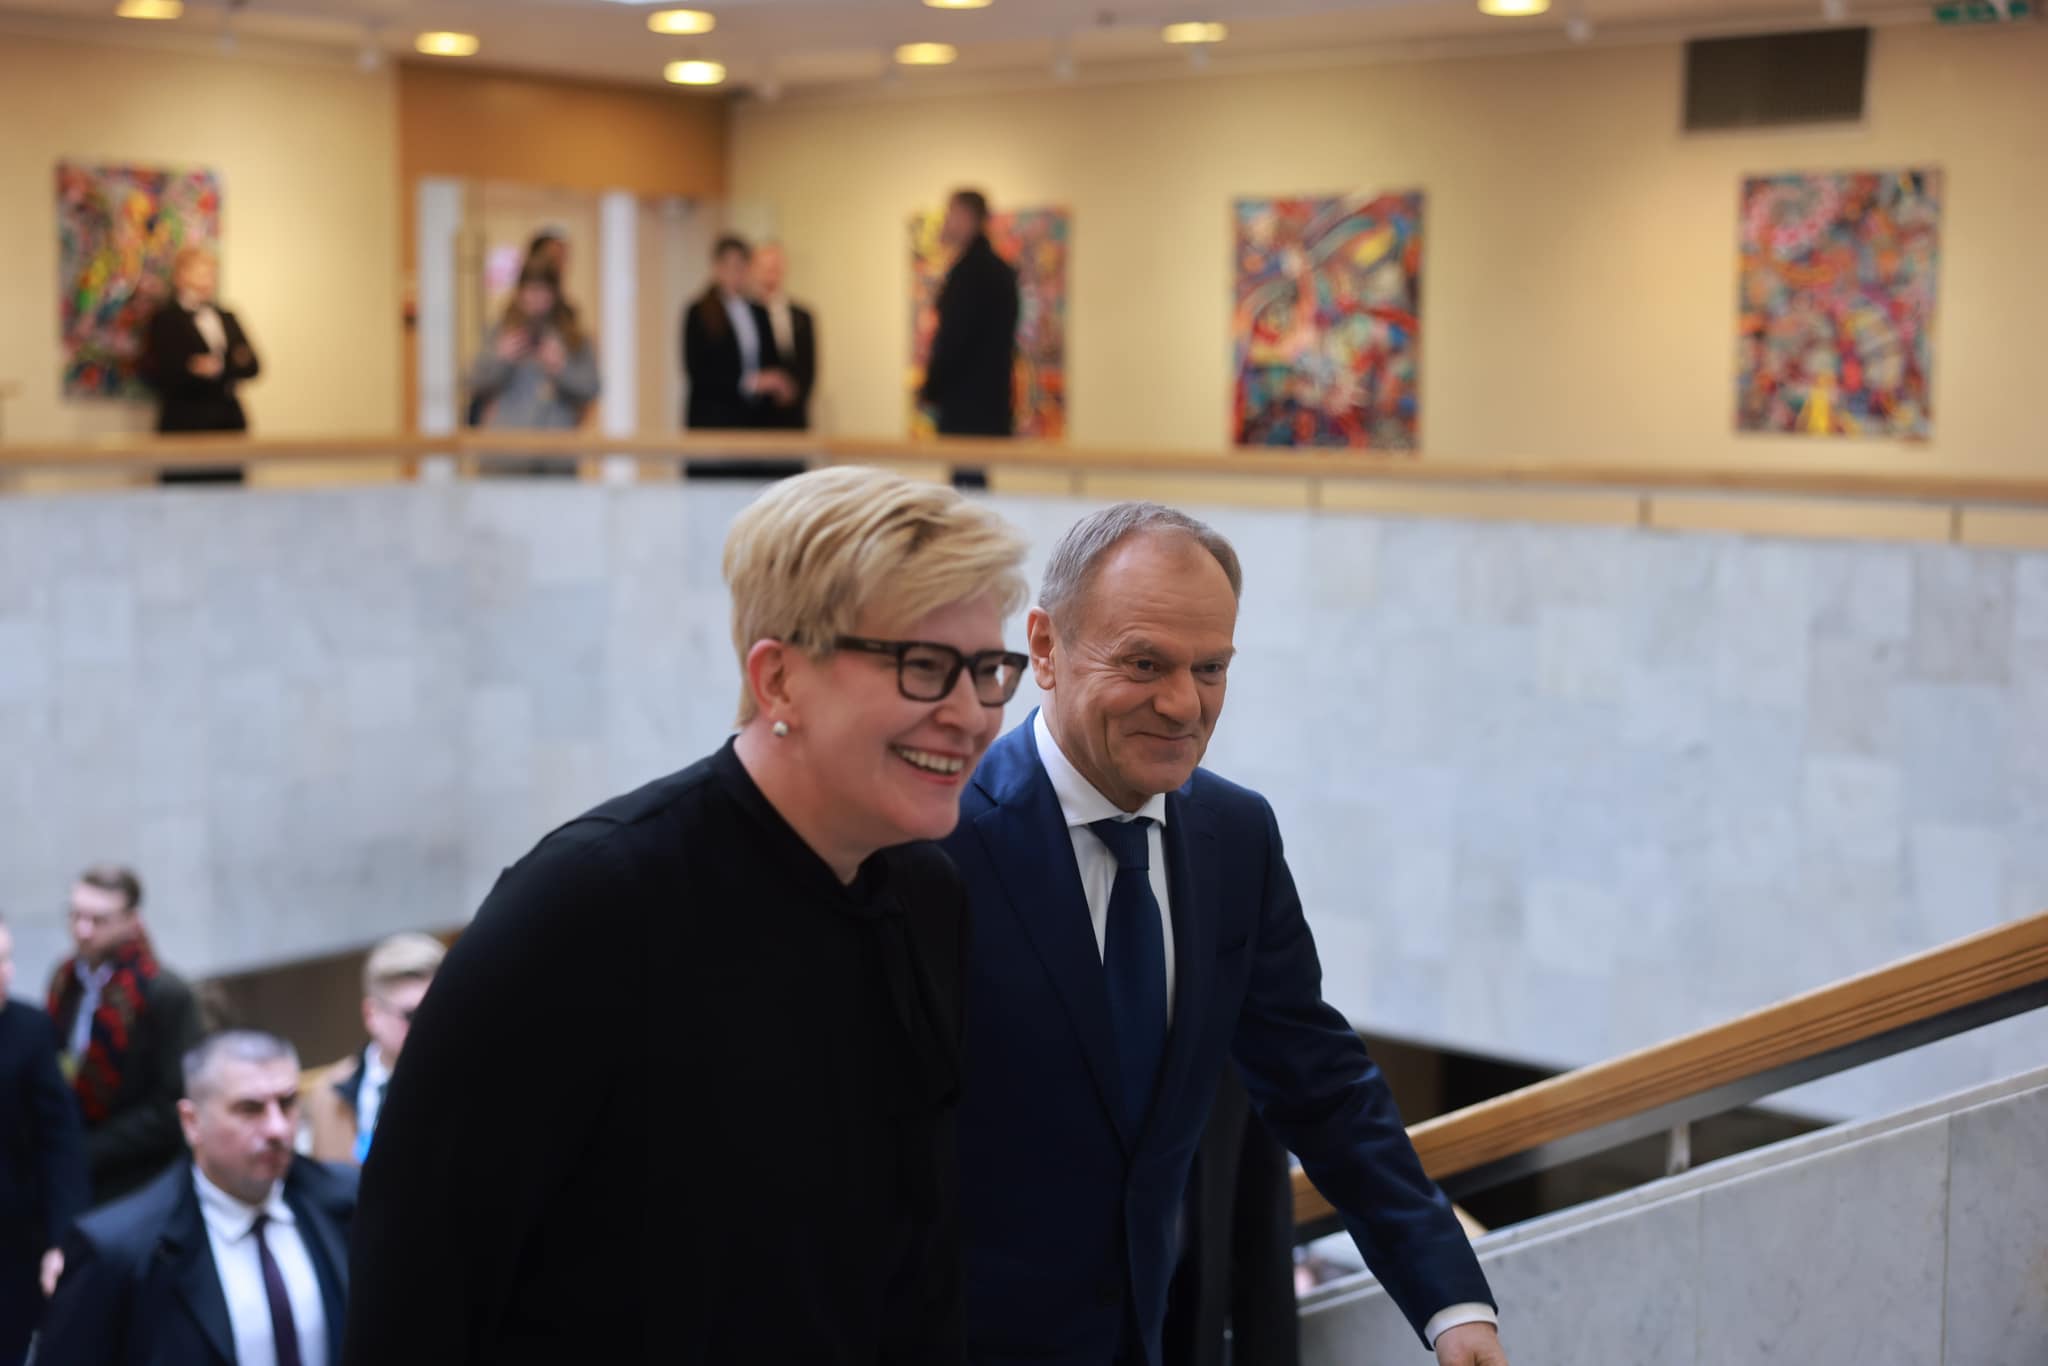 Usmiechnięci Donald Tusk i Ingrida Šimonytė wchodza po schodach